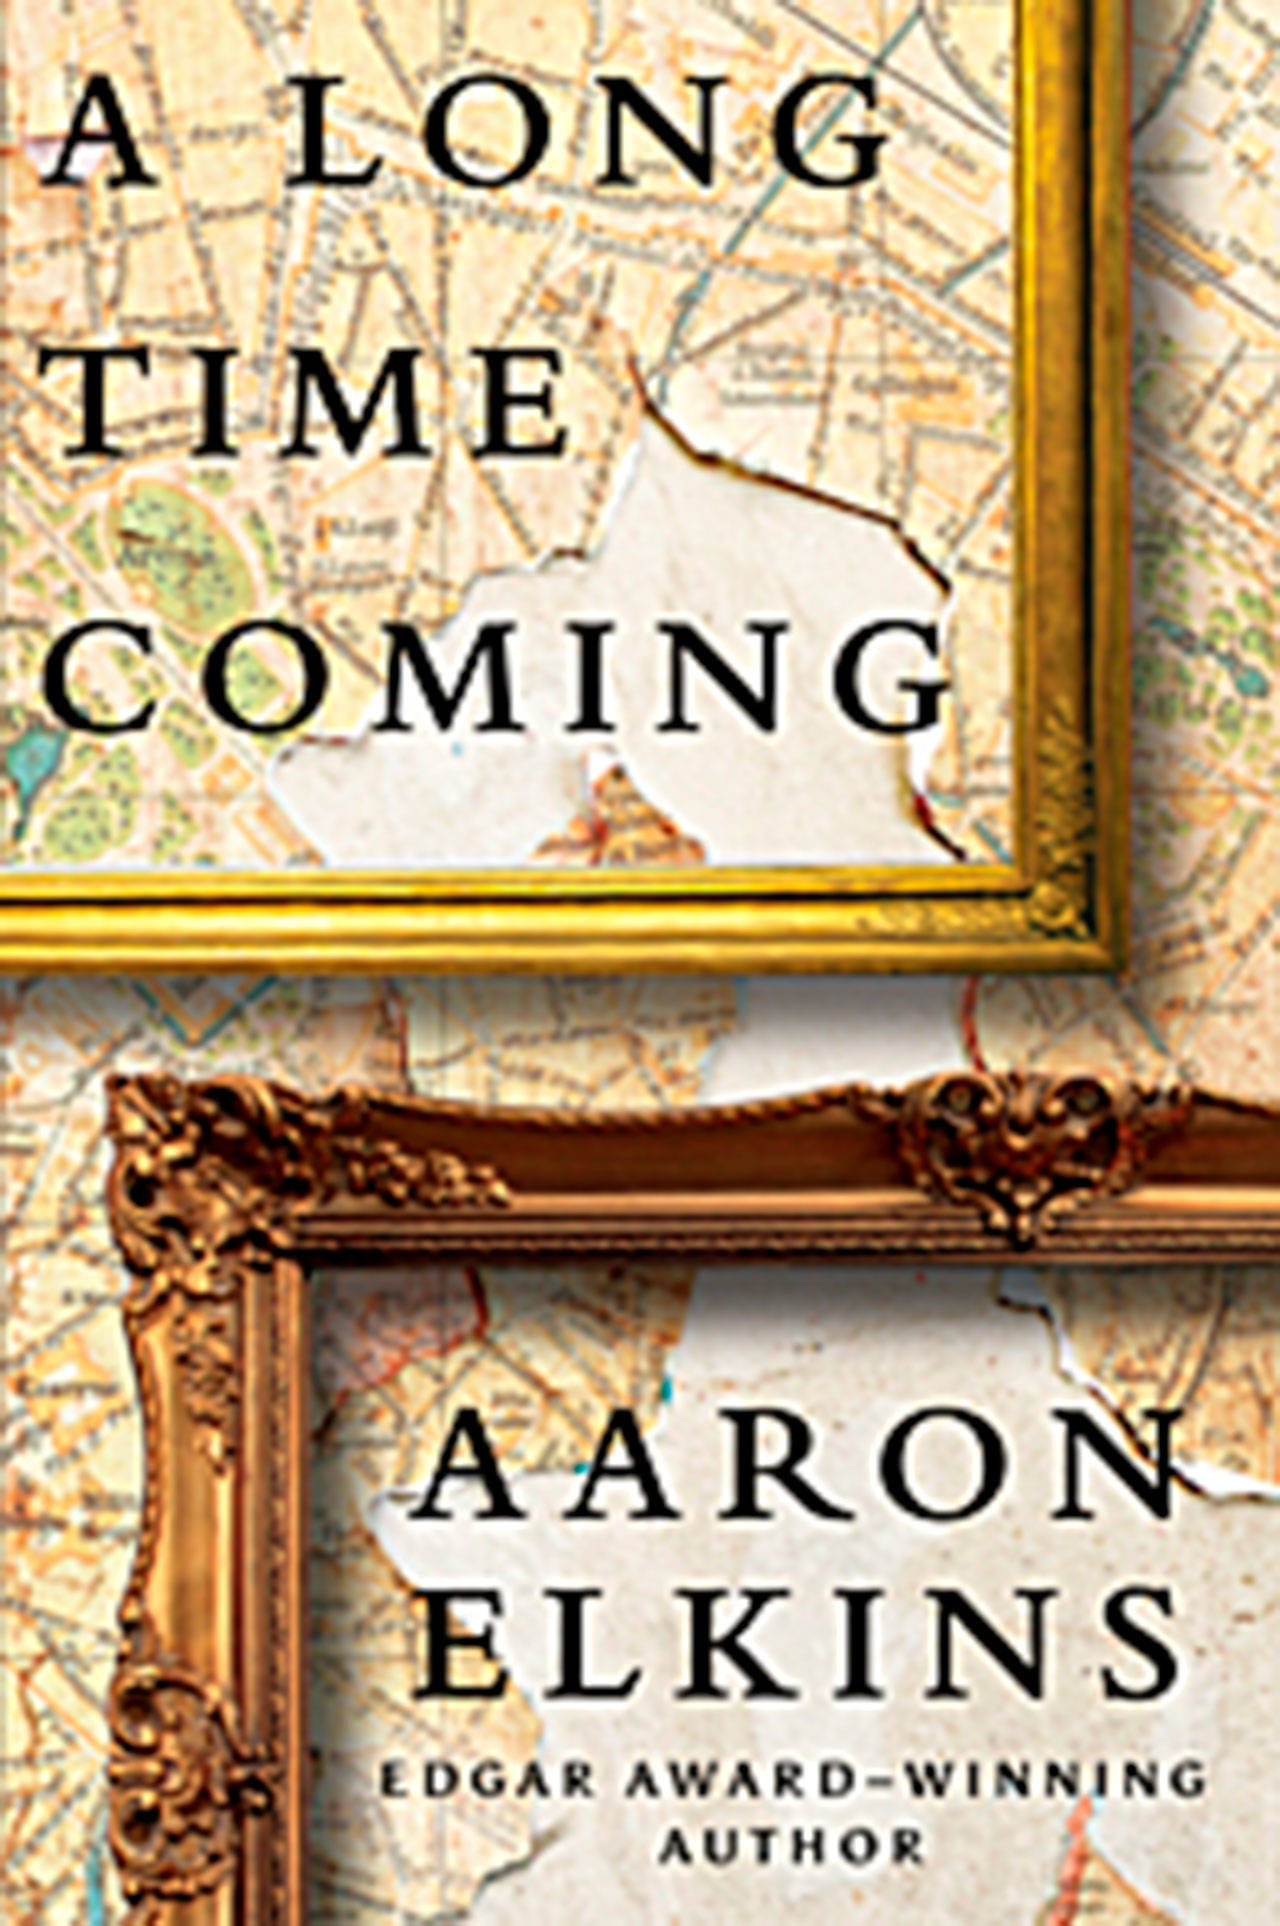 Sequim author Aaron Elkins explores history, art in new thriller